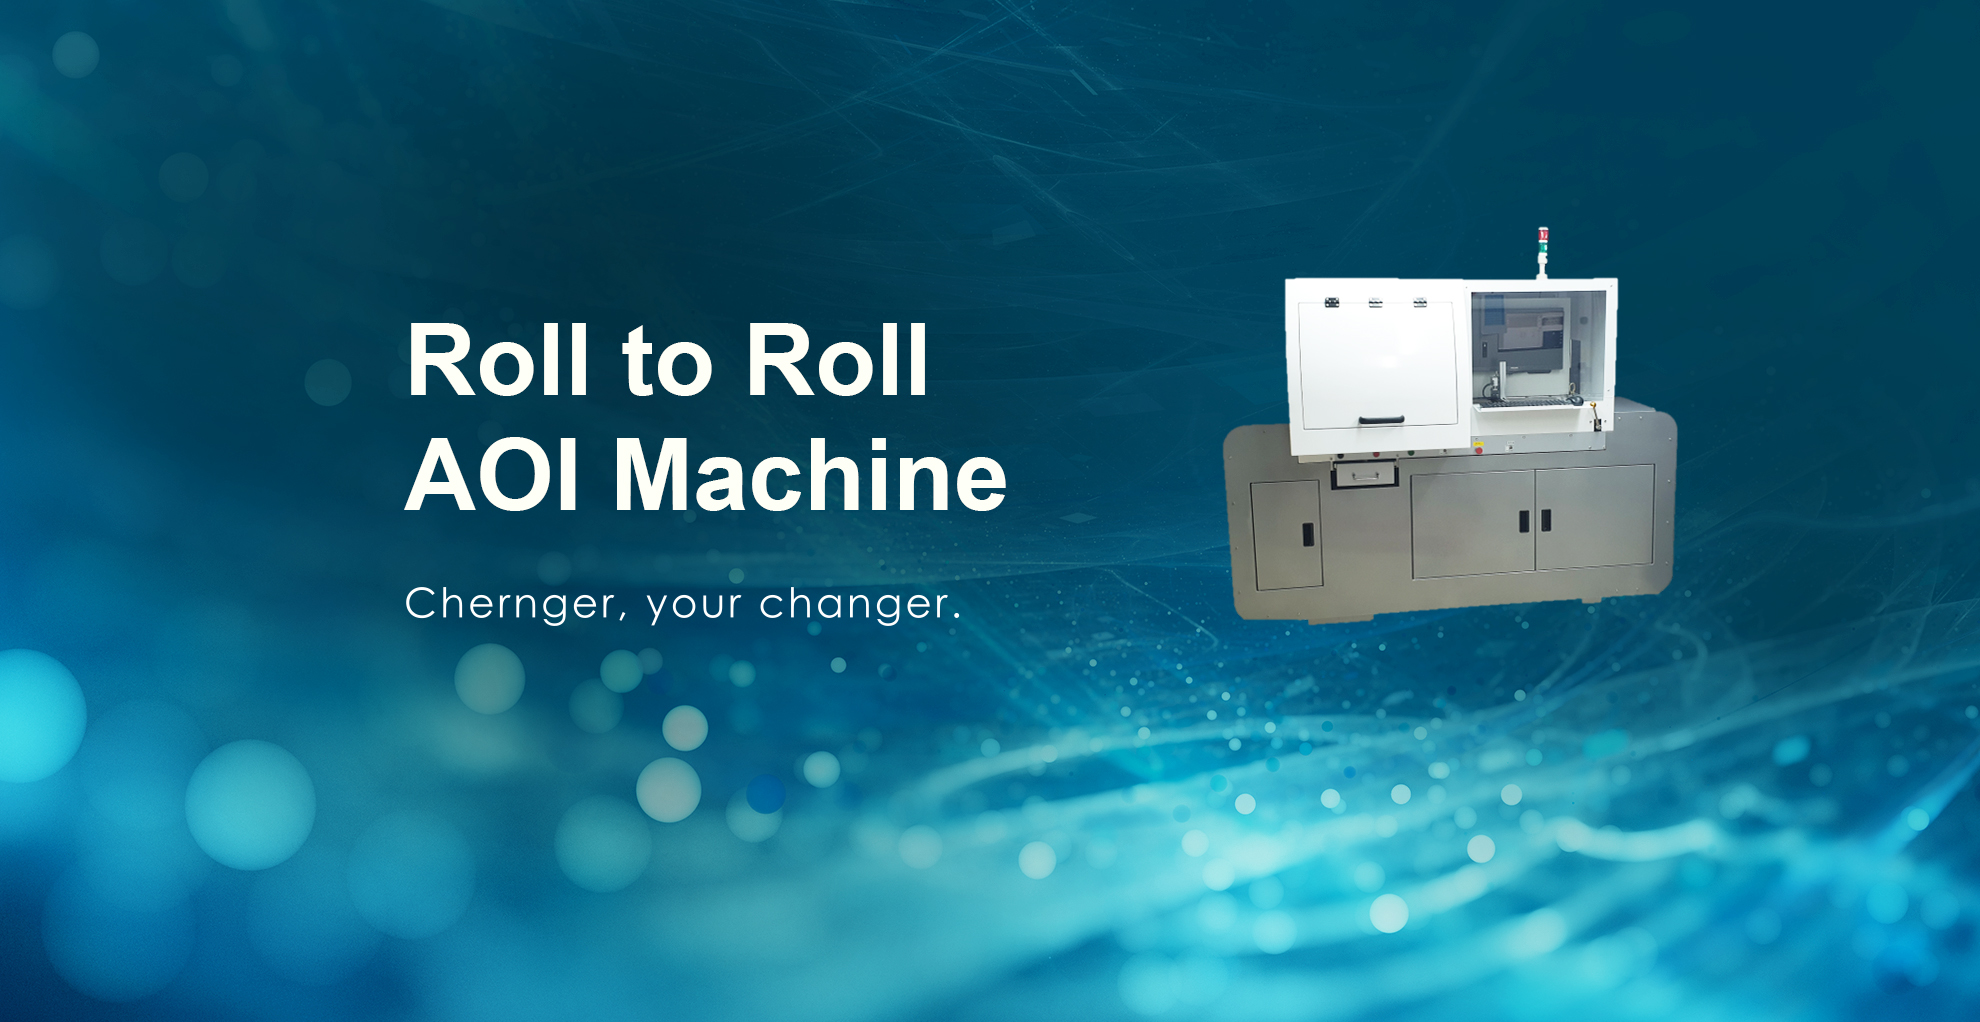 捲對捲印刷品檢查機 Roll to Roll AOI Machine